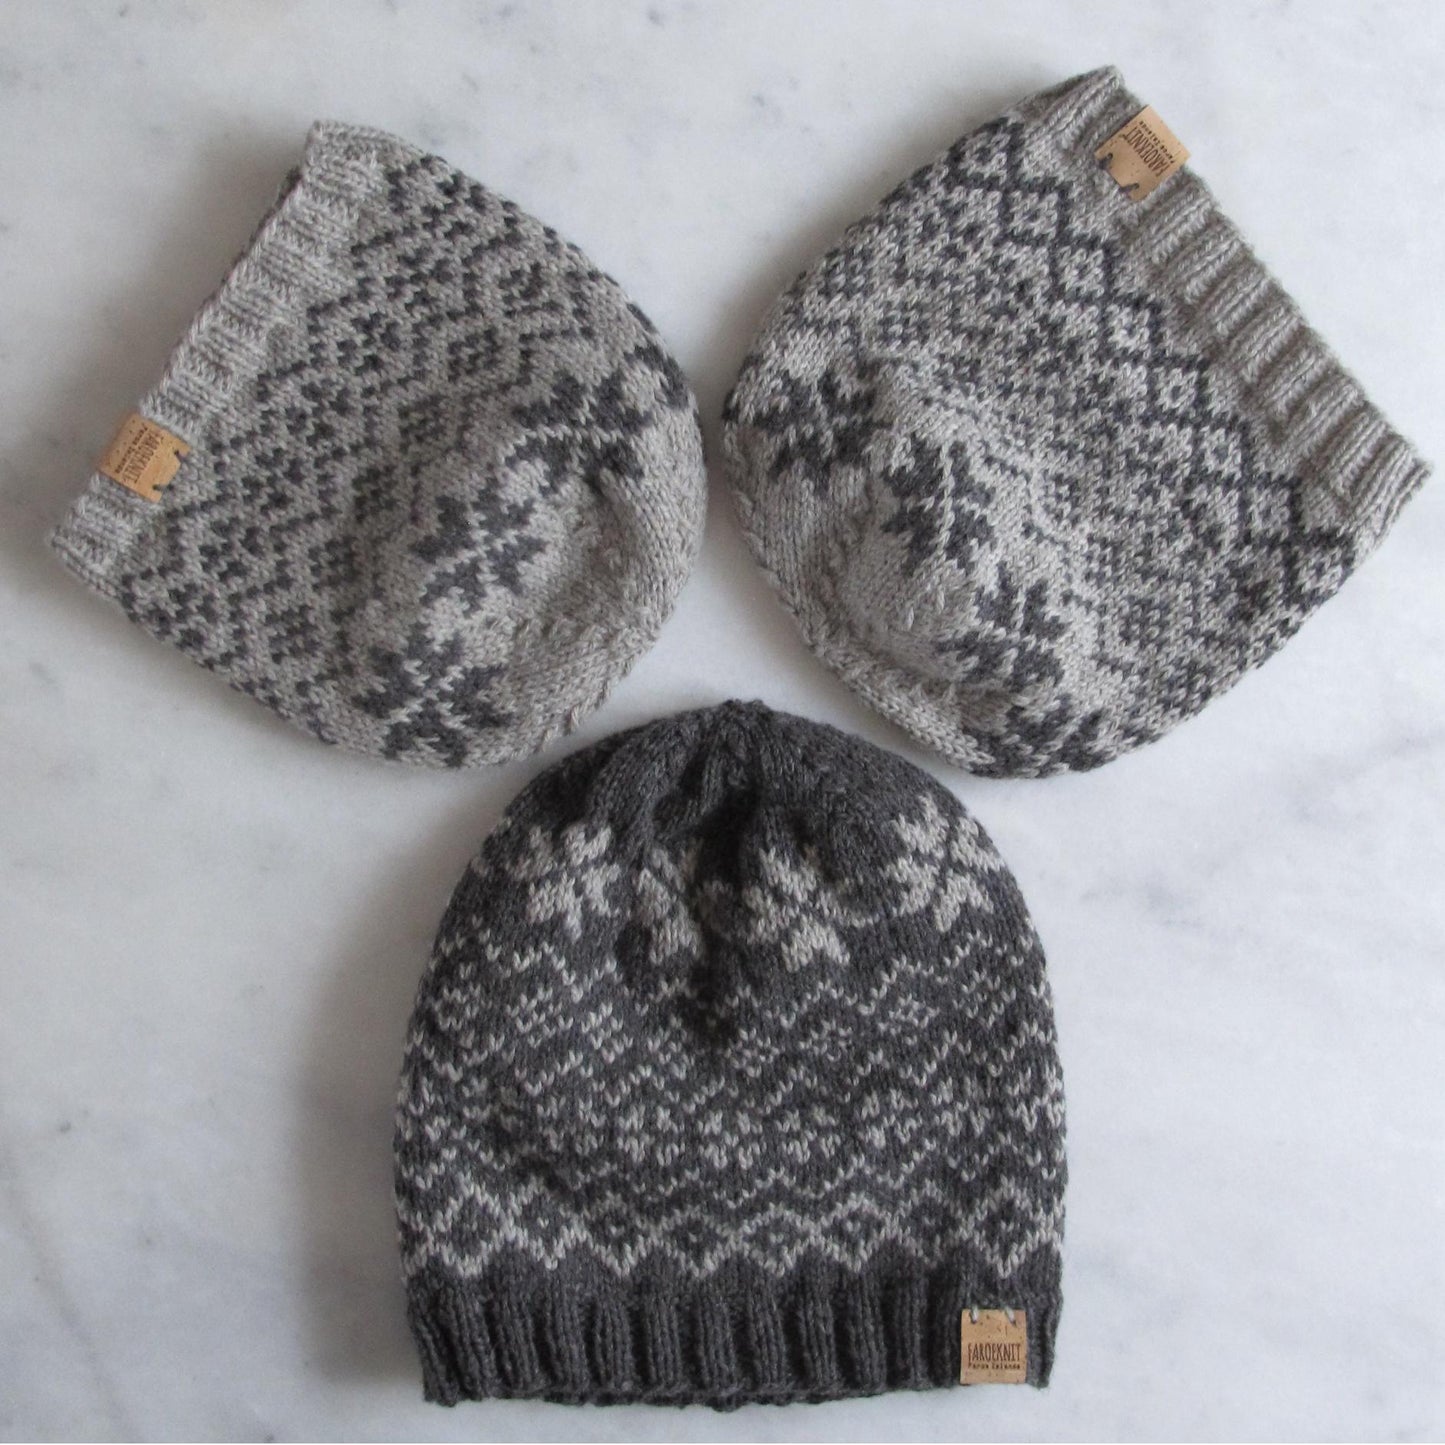 Faroeknit beanie knitting pattern